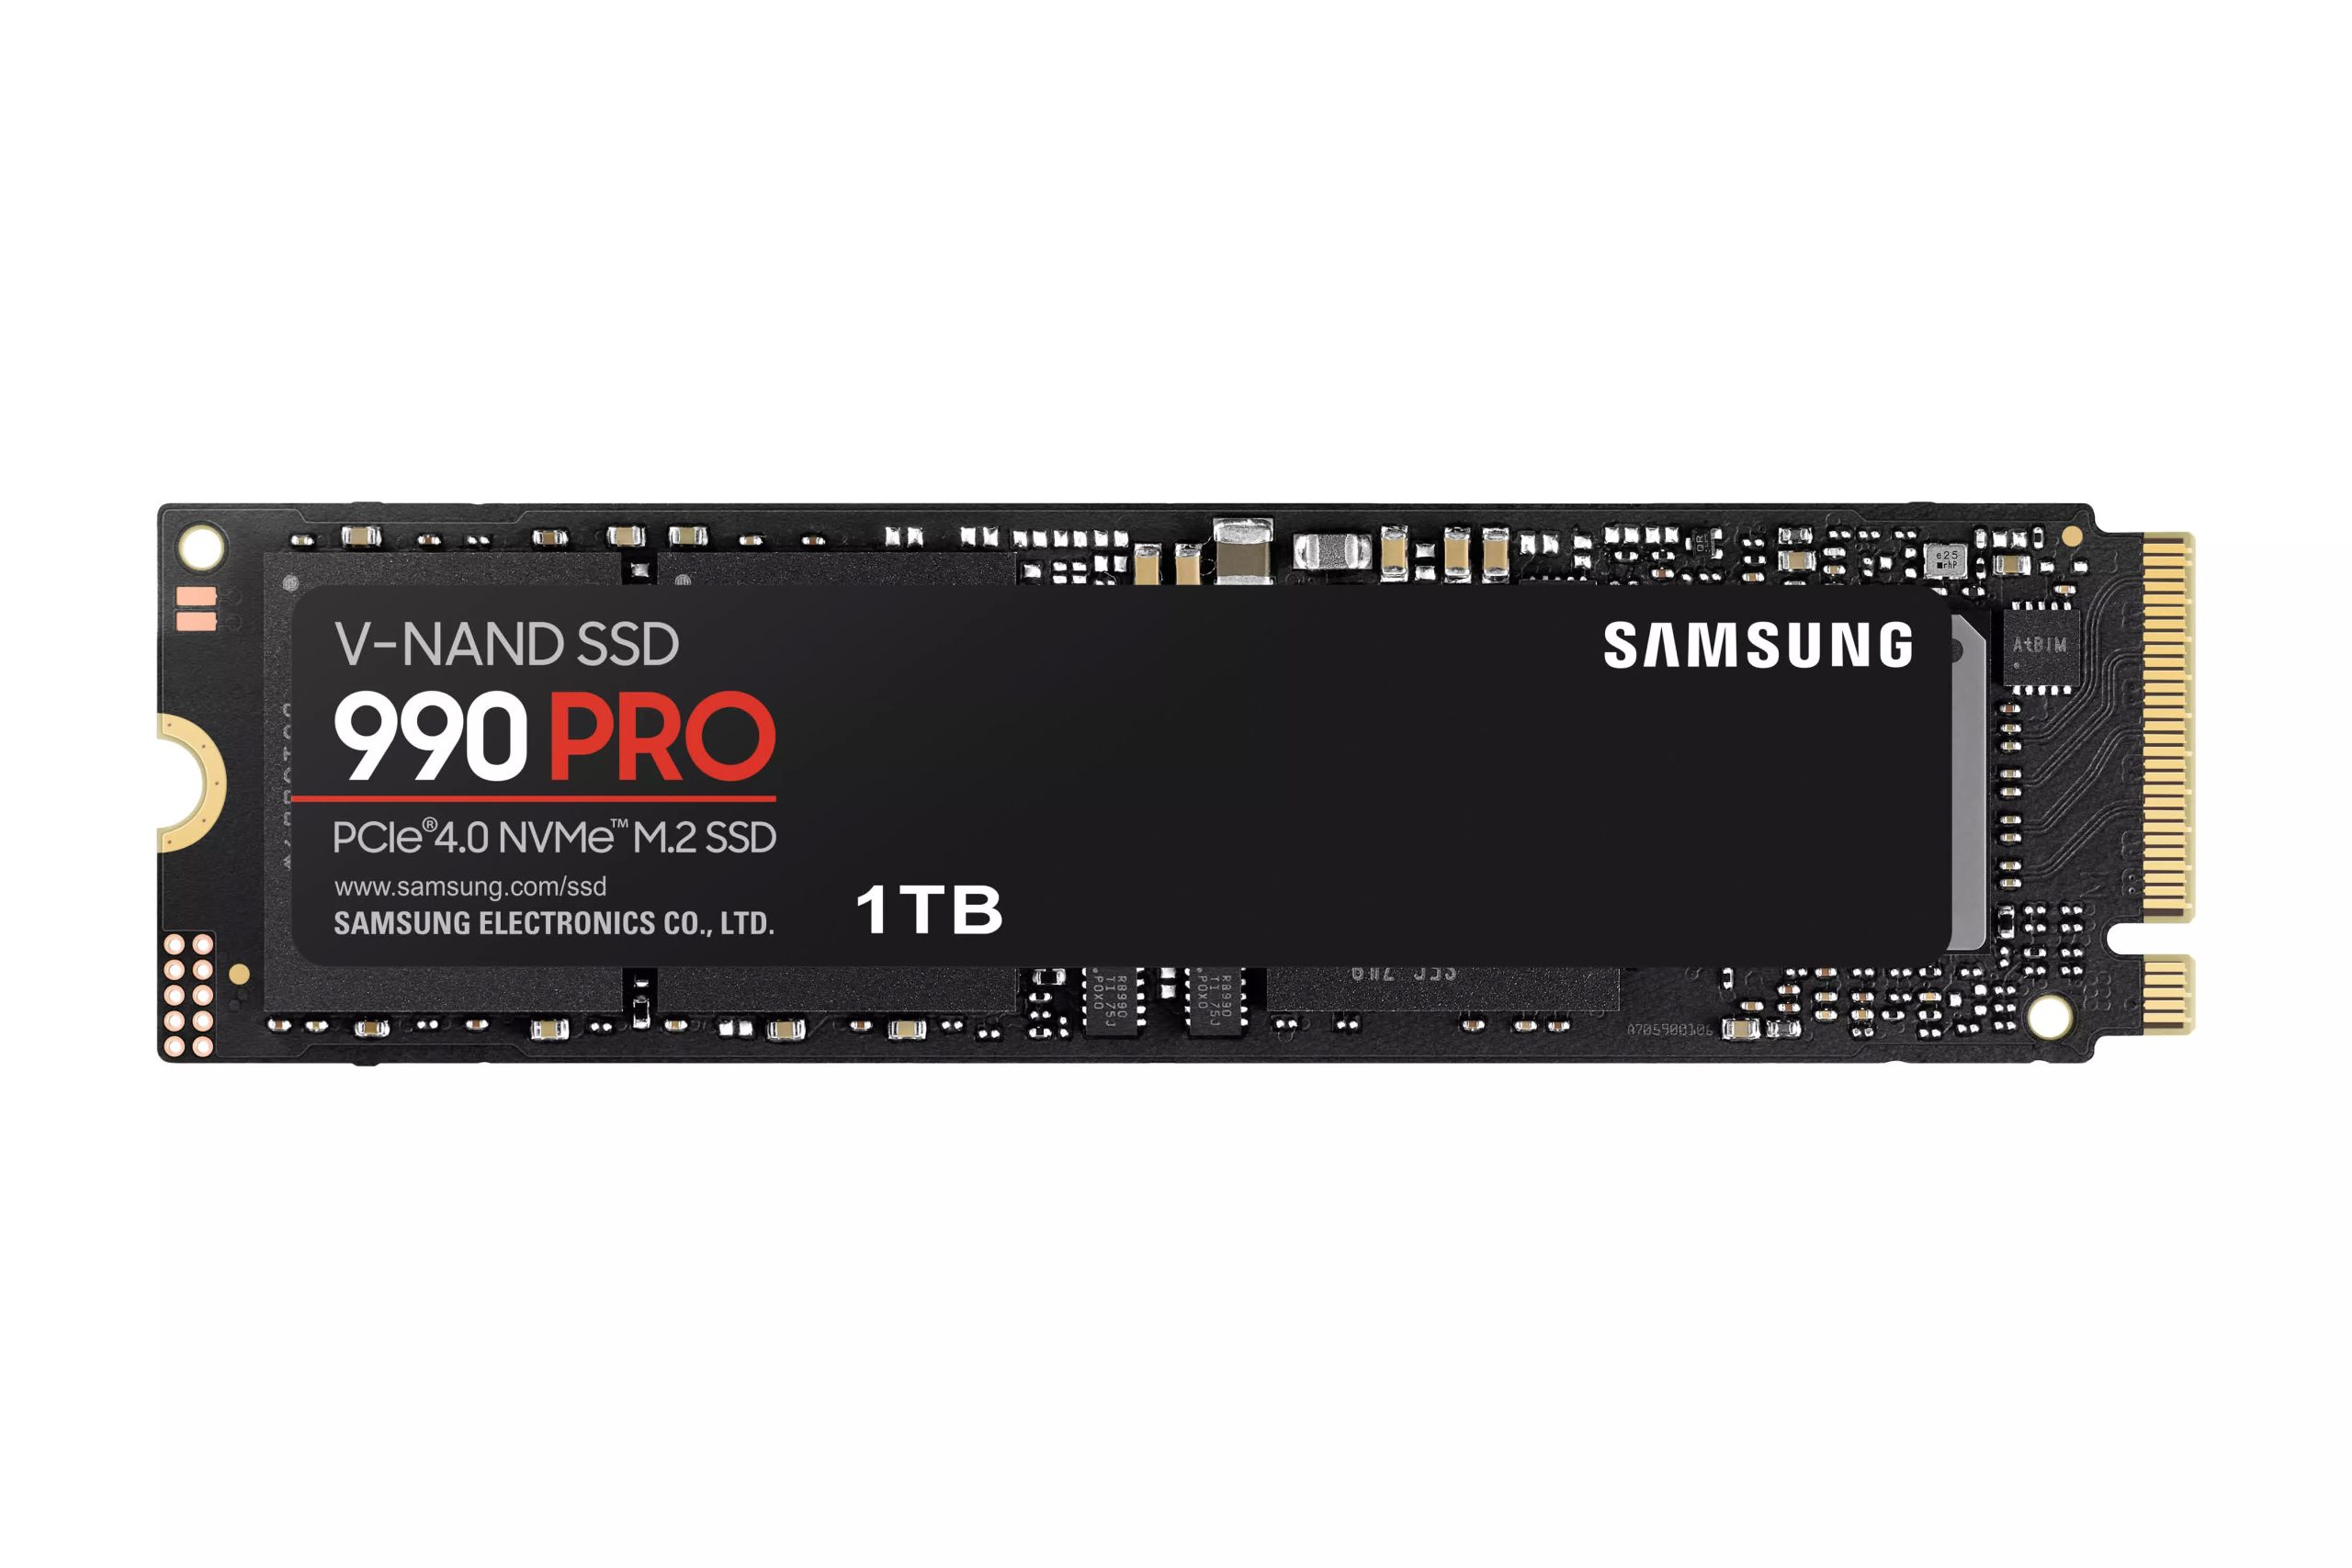 Reseñas, ventajas y desventajas de Samsung 990 Pro NVMe PCIe 4.0 SSD